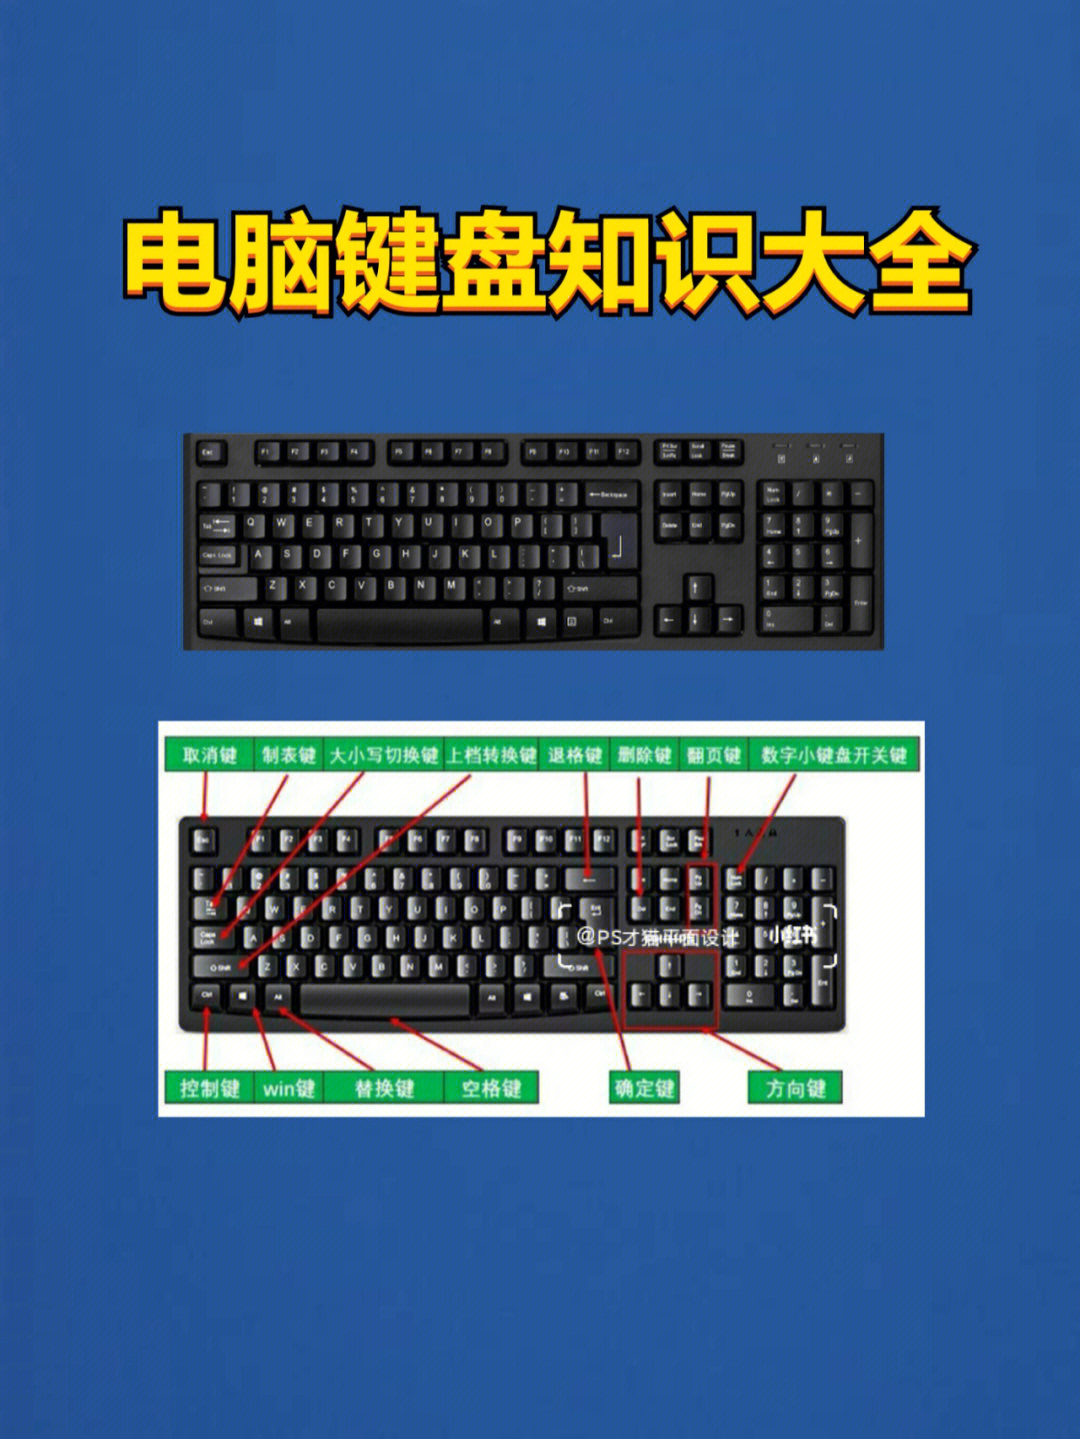 双飞燕x7 g-100专业游戏键盘_双飞燕键盘一般多少钱_双飞燕游戏键盘推荐